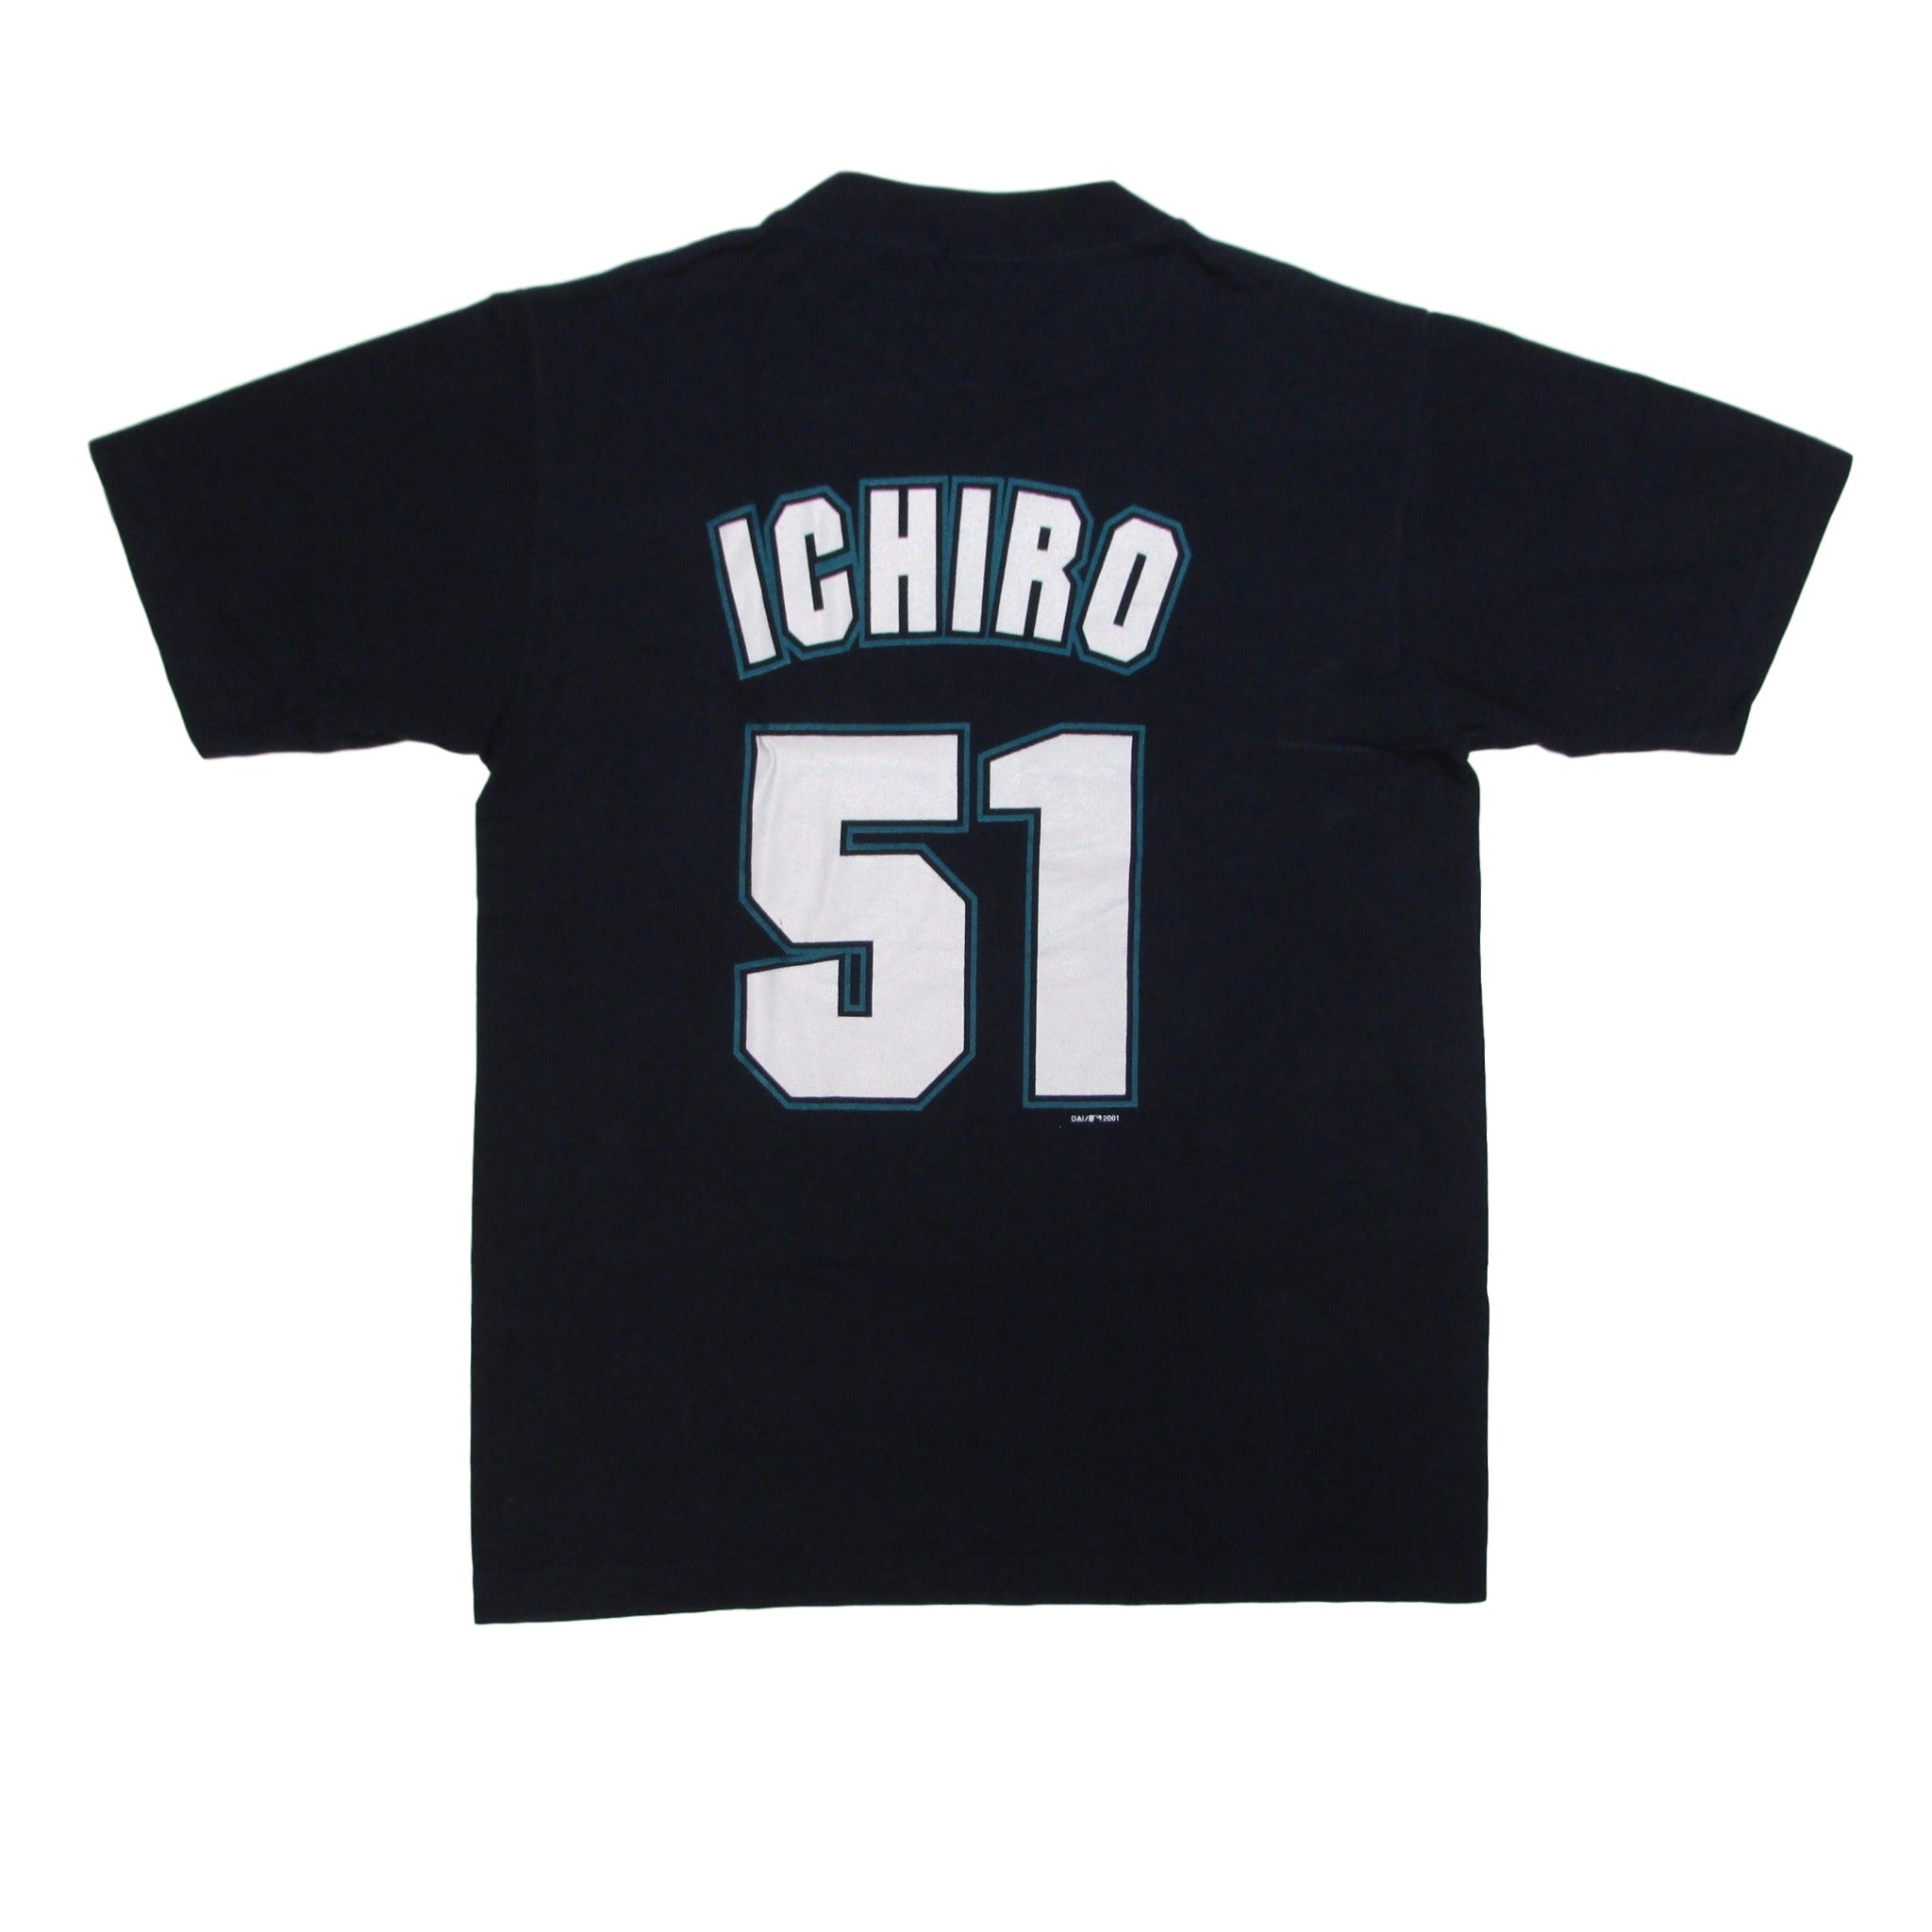 ichiro throwback jersey